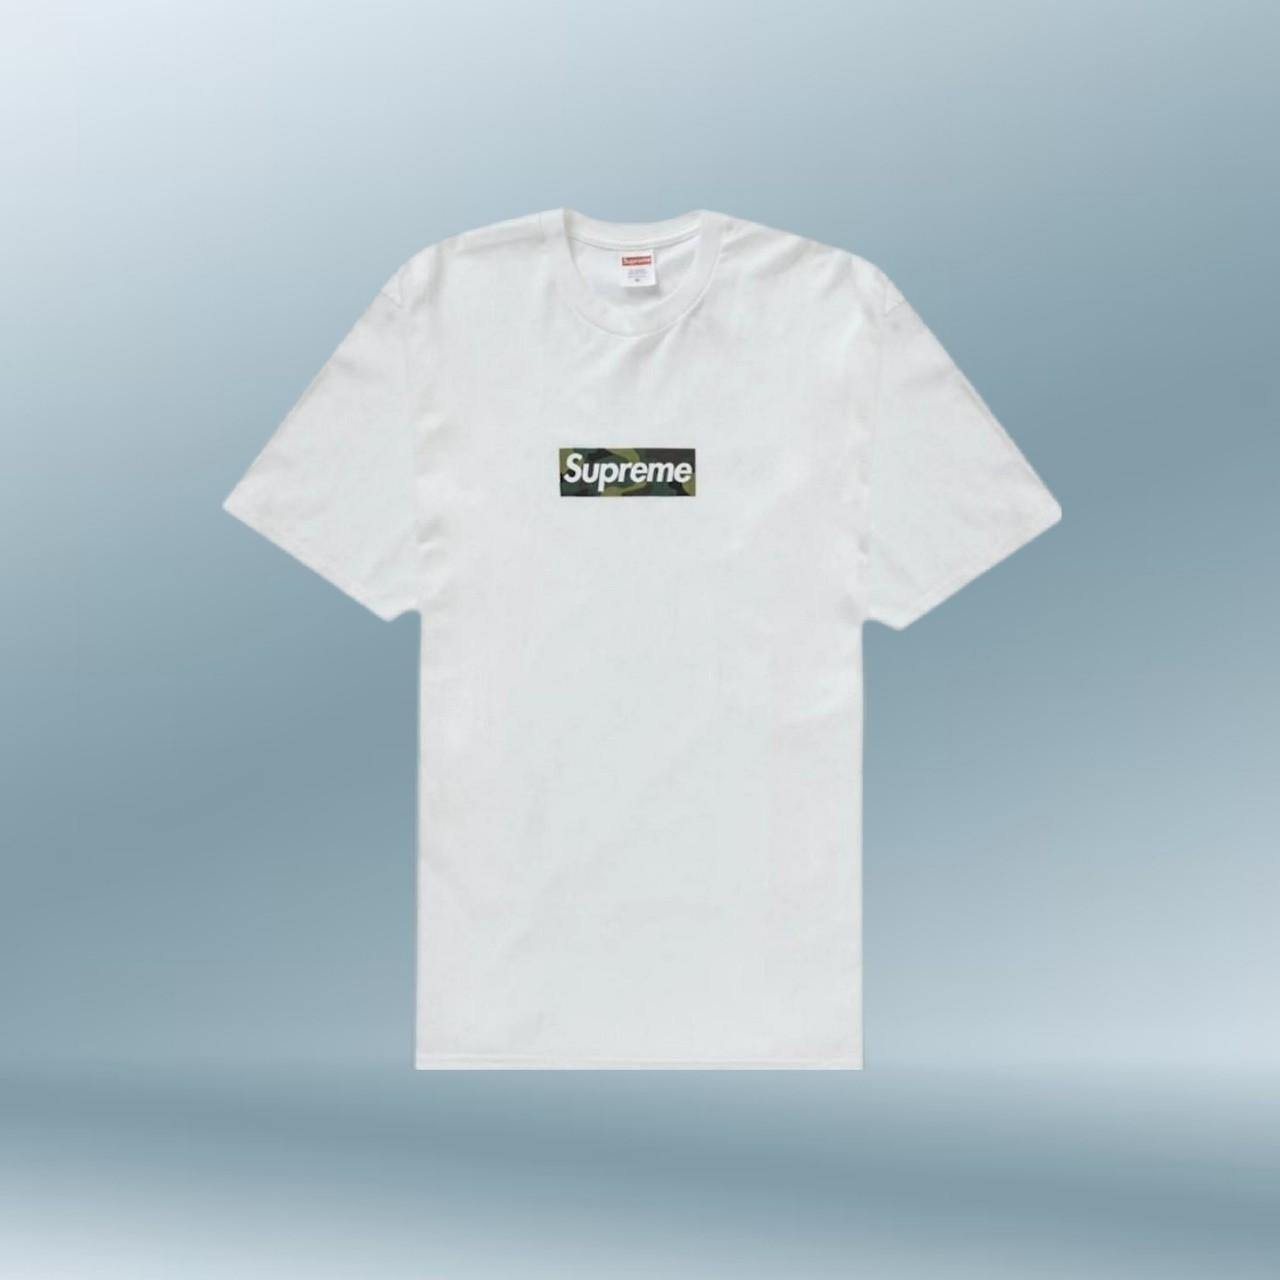 Supreme Women's T-Shirt Sofy White 20016-TPR-19-002-3003 ✓Women's T